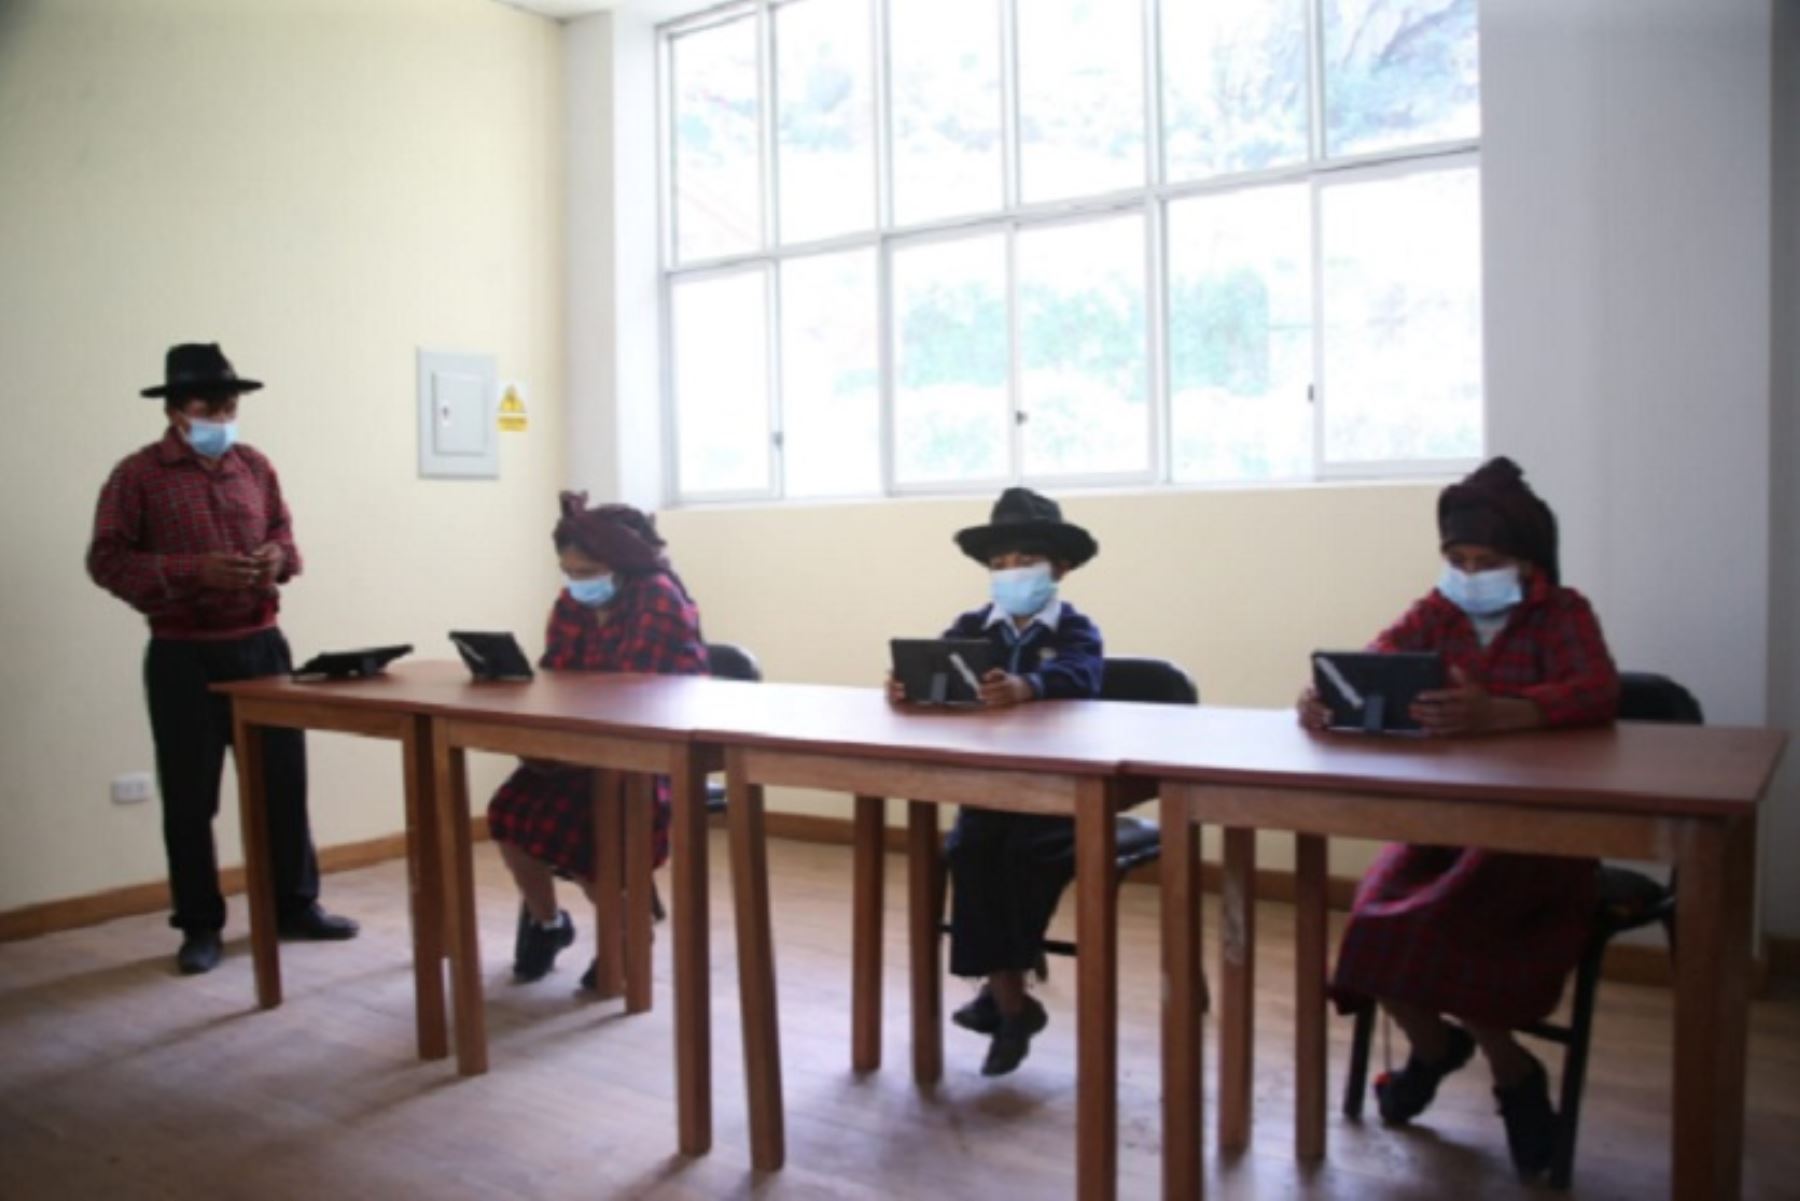 Ya son más de 56,000 escolares los que asisten a clases semipresenciales en zonas rurales, informó el Ministerio de Educación. ANDINA/Difusión